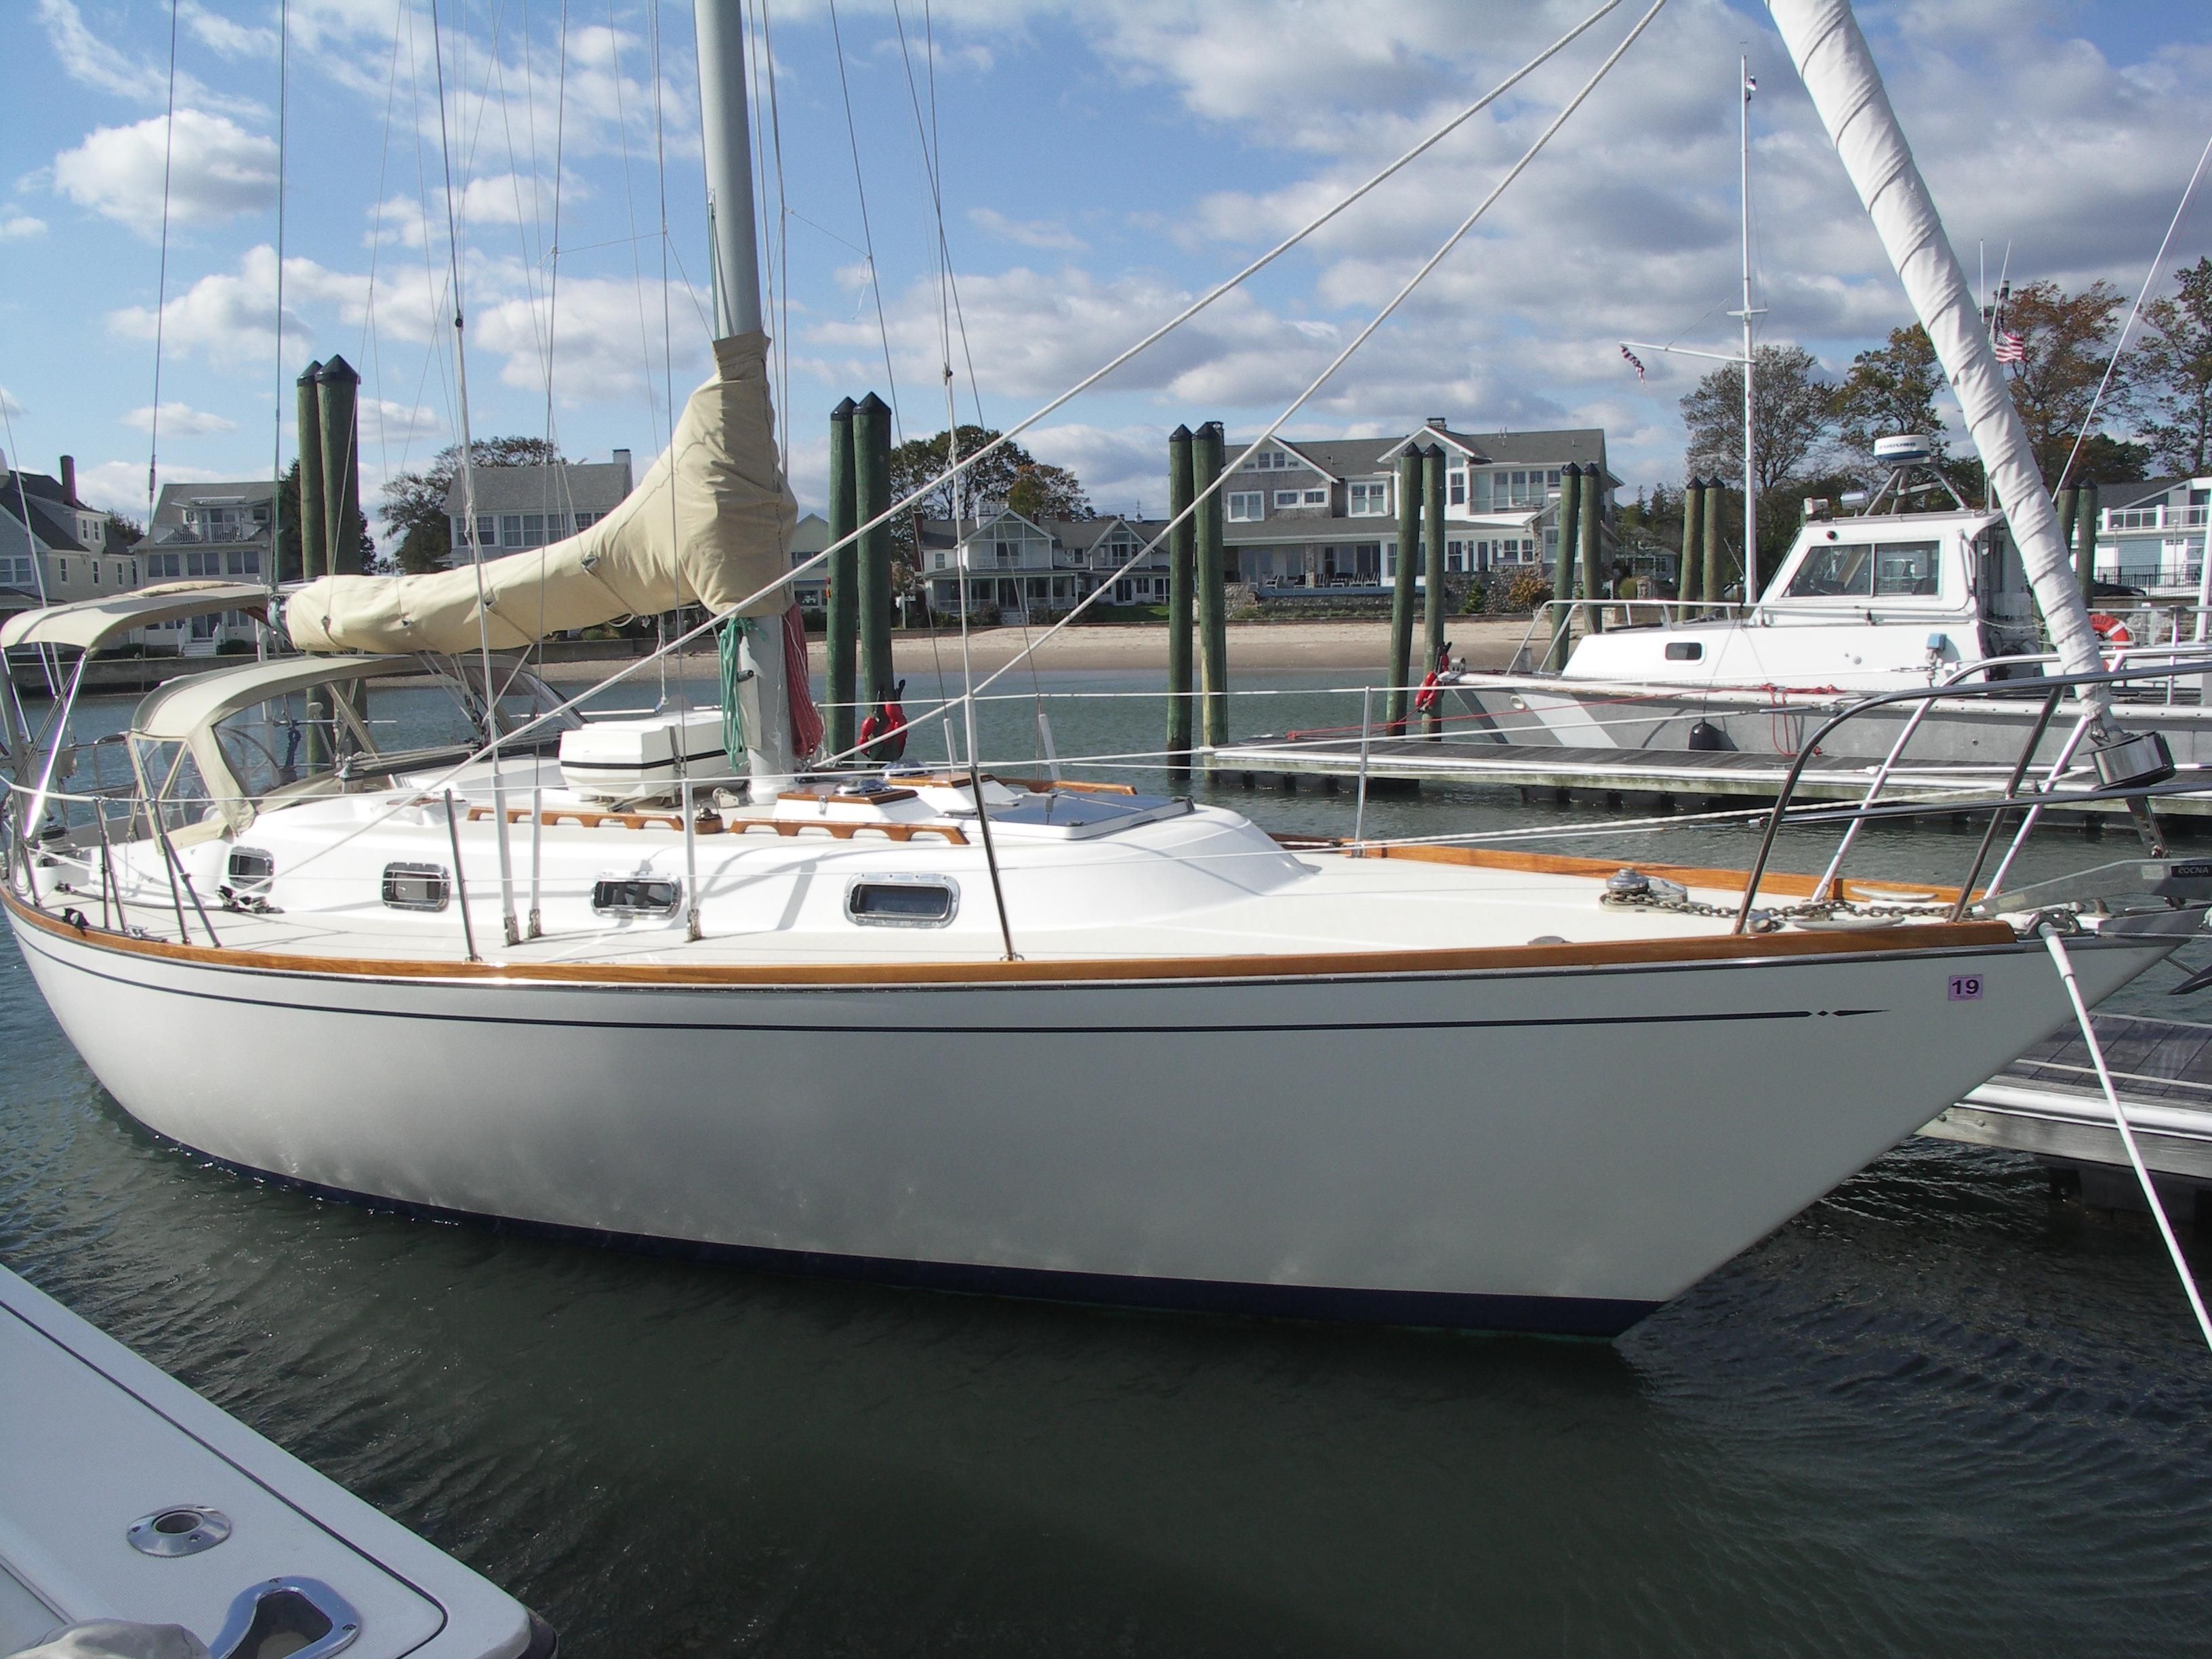 37' sailboat